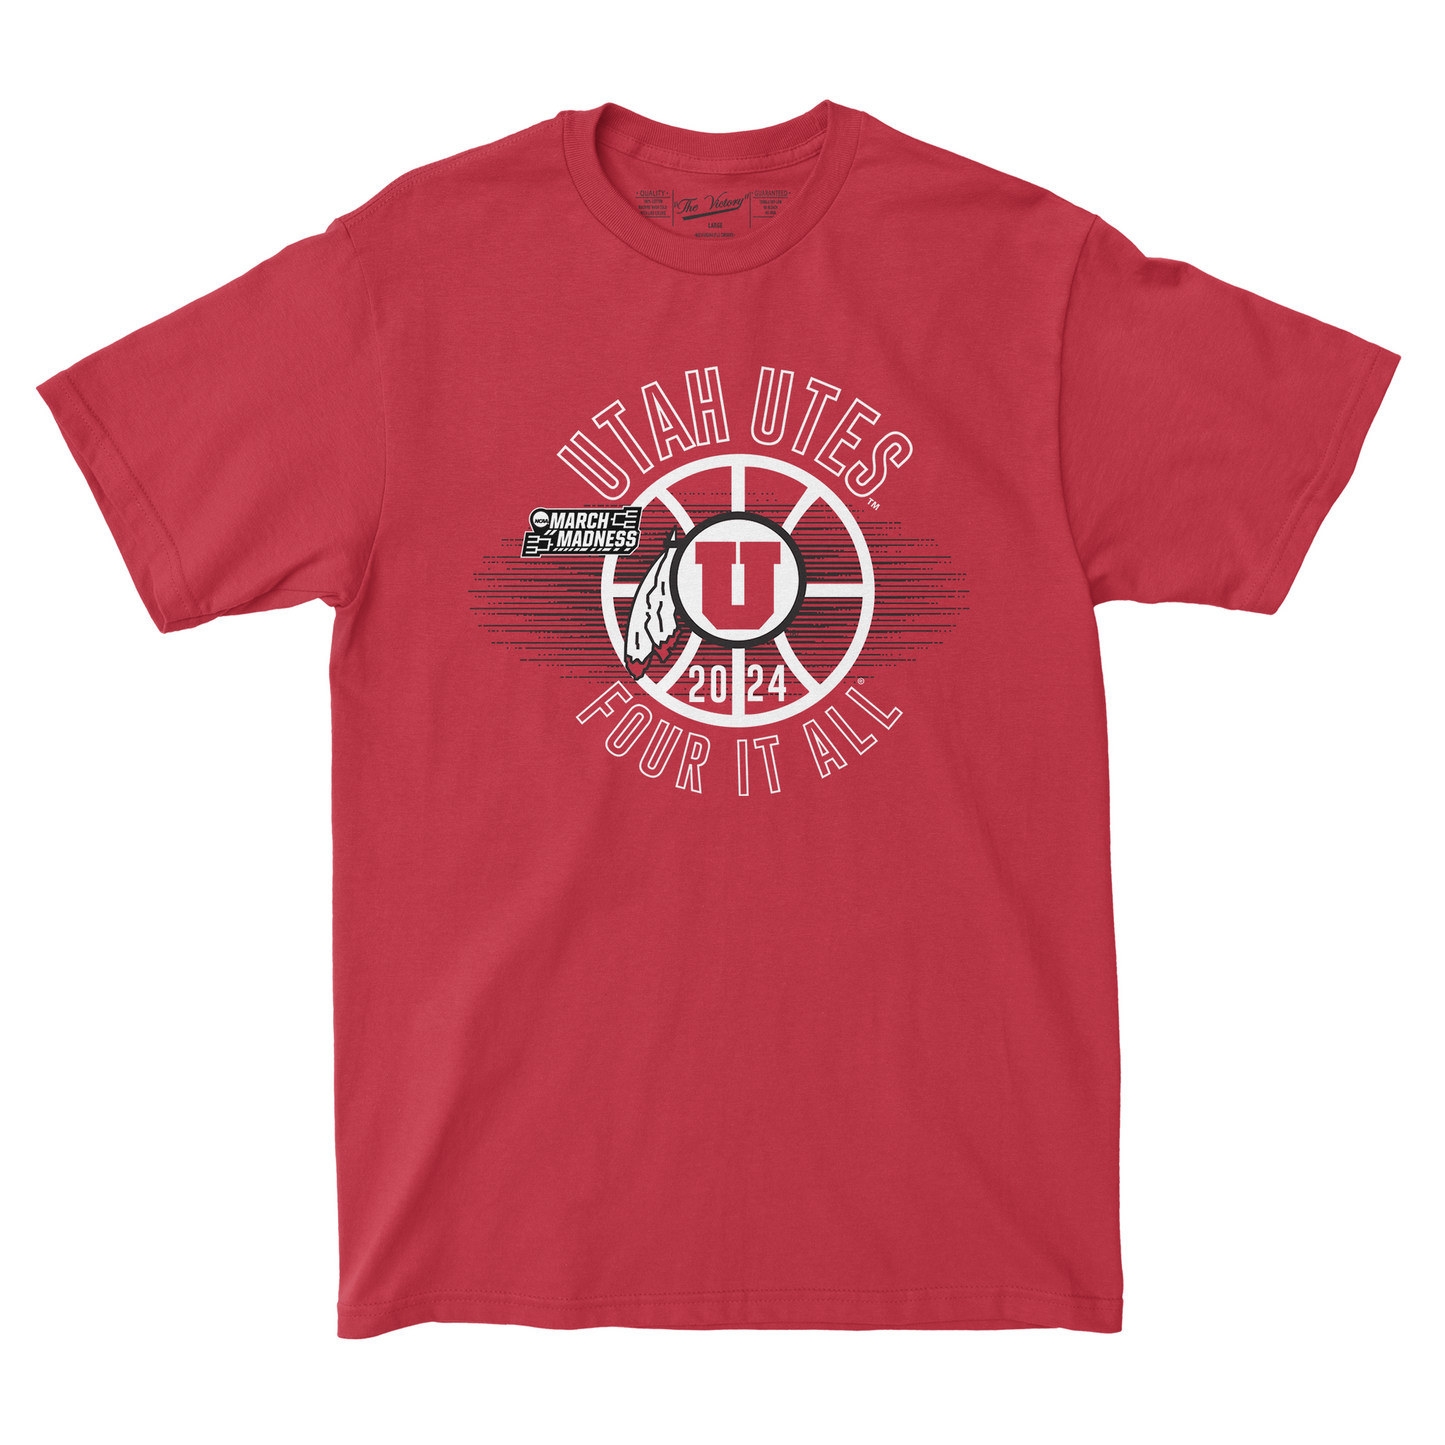 Utah WBB Four it all T-shirt by Retro Brand